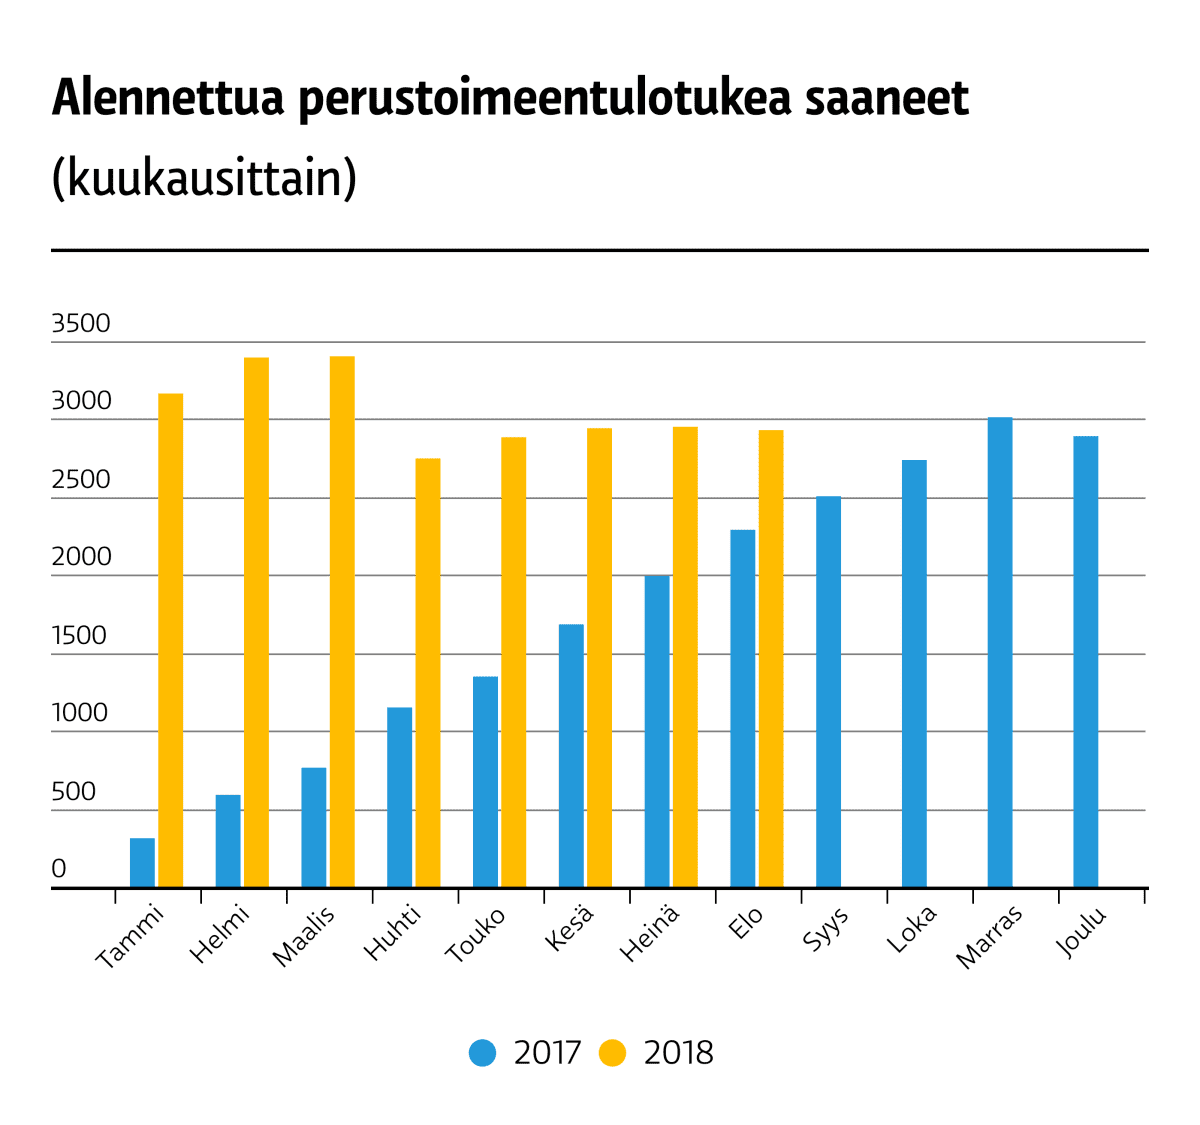 Alannettua perustoimeentulotukea saaneet 2017-2018